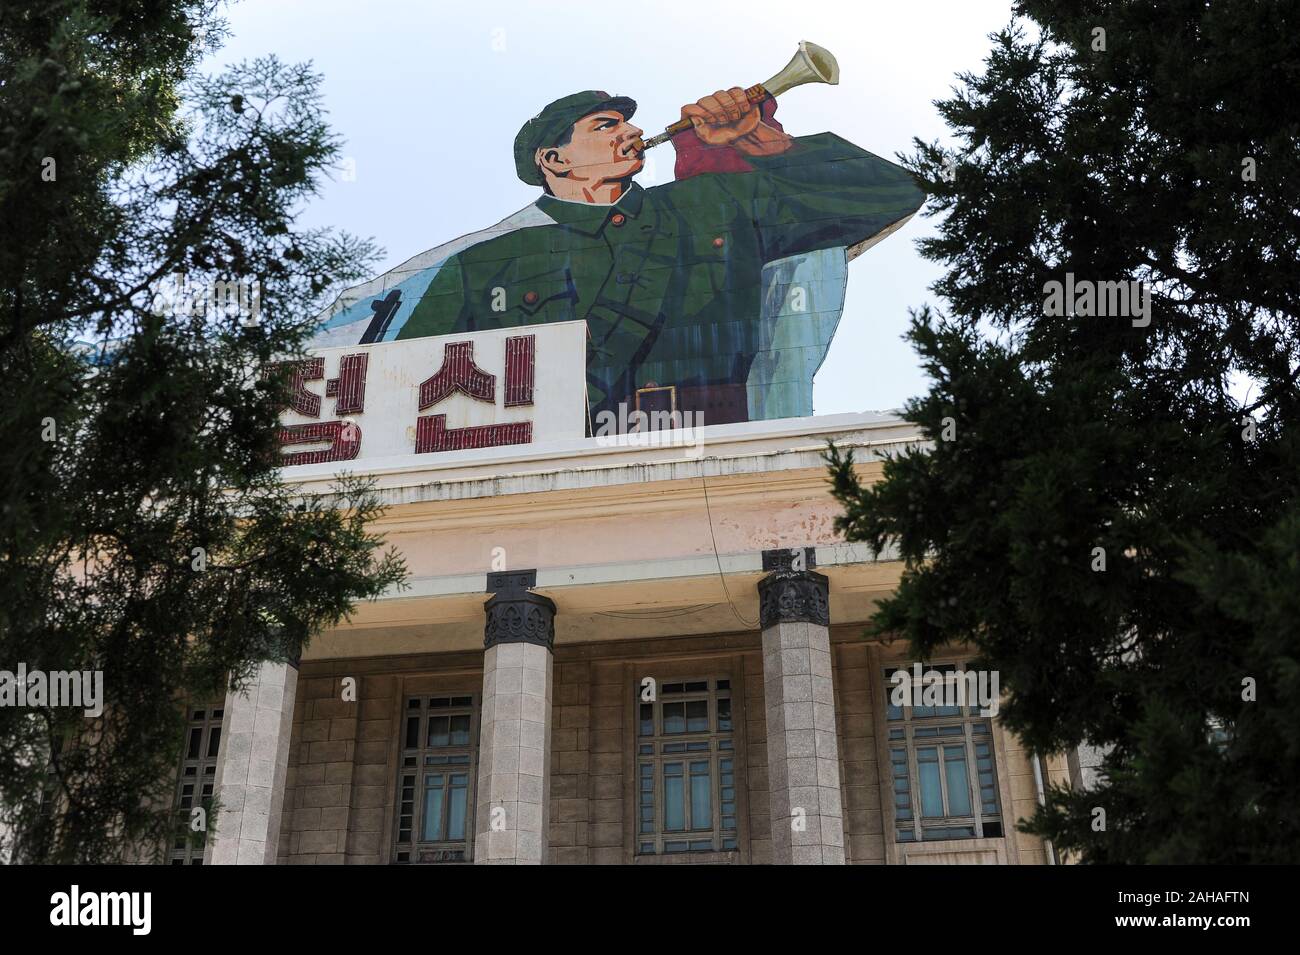 08.08.2012, Pjoengjang, , la Corée du Nord - affiche de propagande en fanfare en uniforme du soldat sur la Place Kim Il Sung à l'habitant de la Corée du Nord Banque D'Images